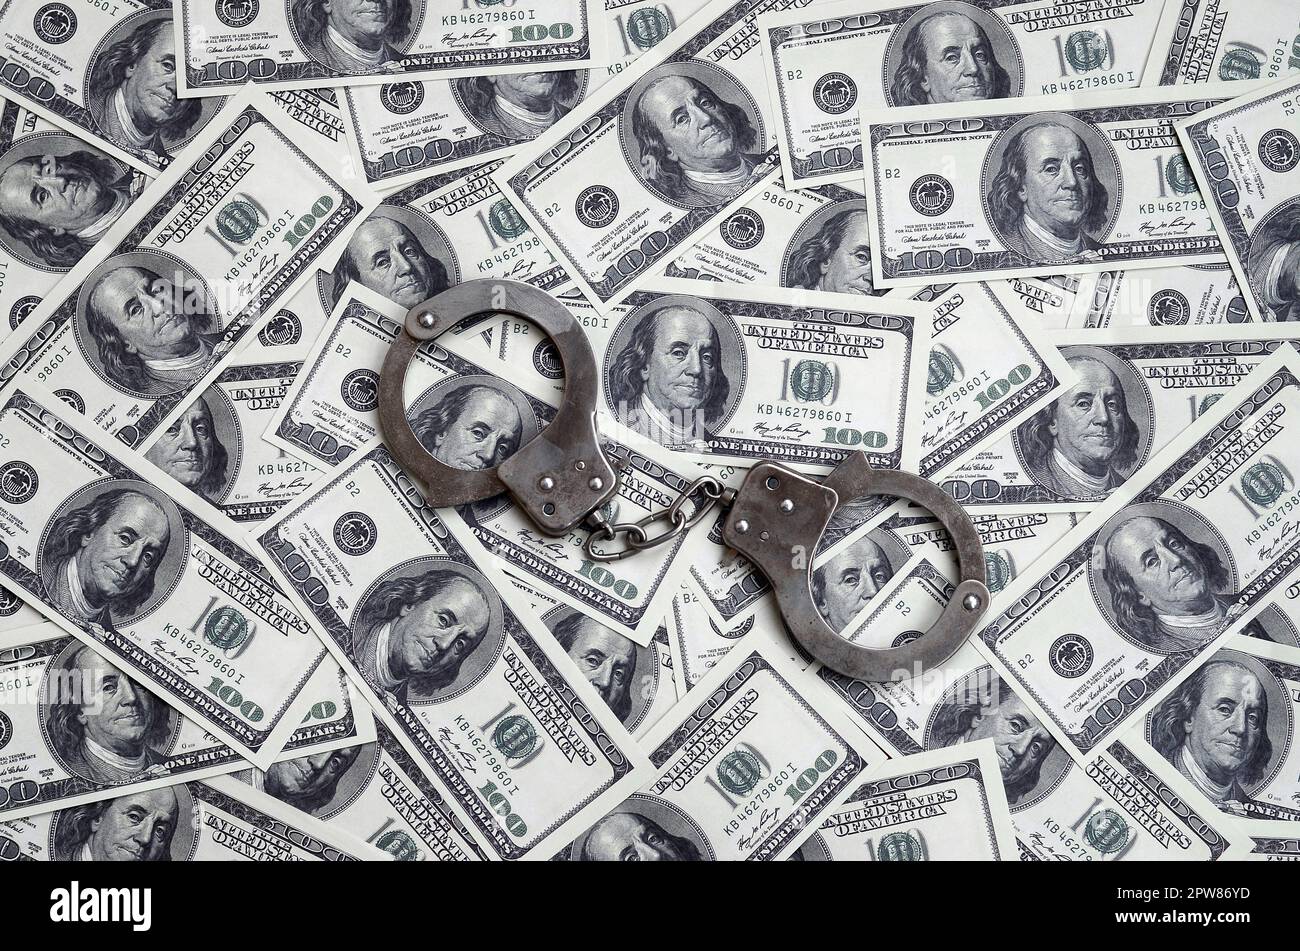 Polizei Handschellen liegen auf einer Menge Dollarscheine. Das Konzept der illegale Besitz von Geld, illegale Geschäfte mit US-Dollar. Wirtschaftskriminalität Stockfoto